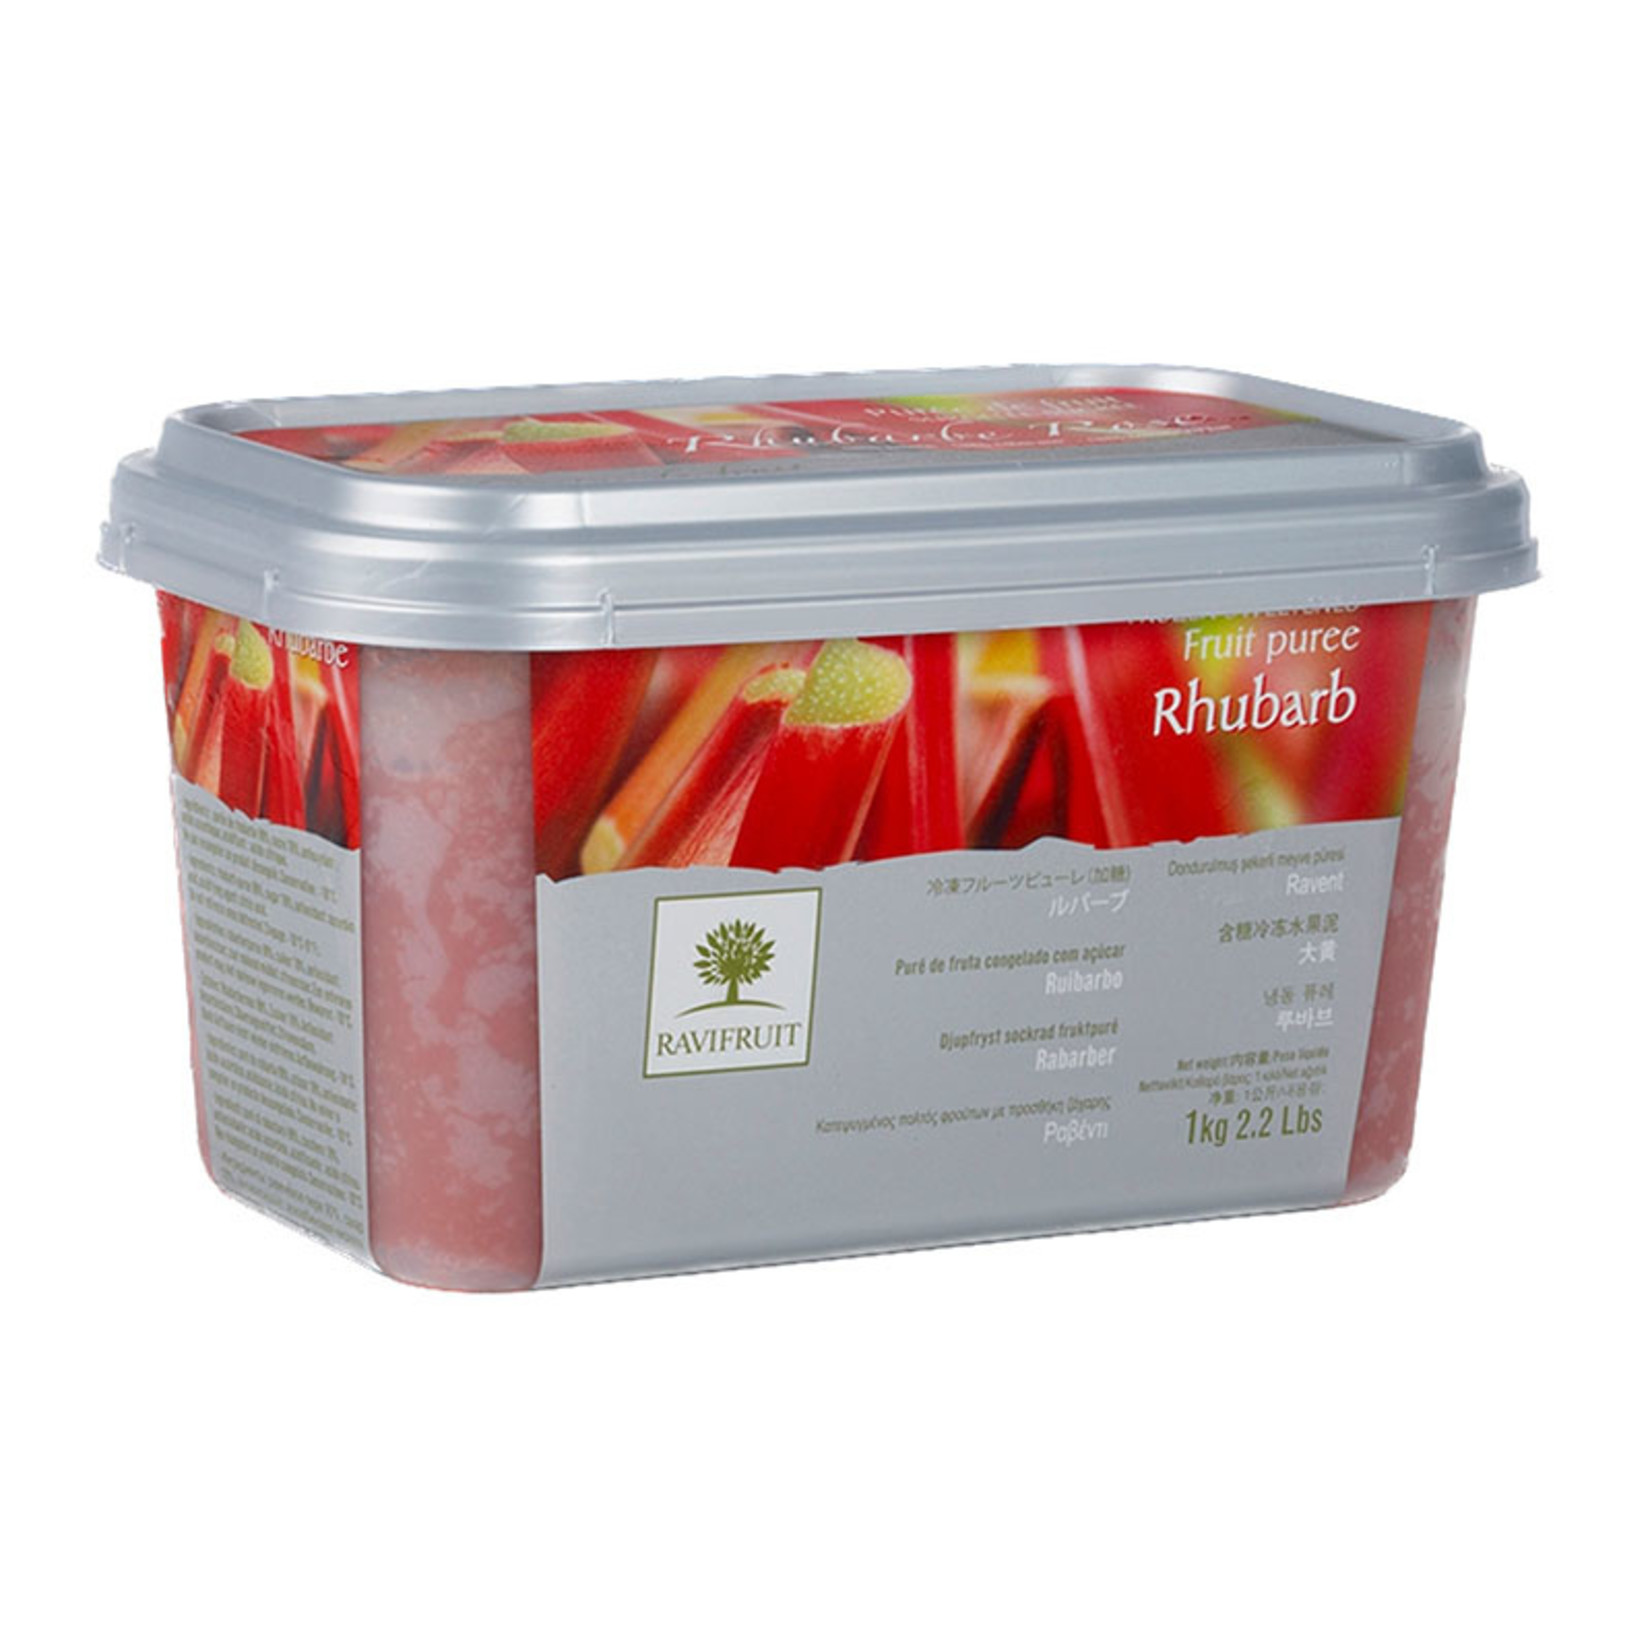 Ravifruit Ravifruit - Rhubarb Puree - 2.2 lb